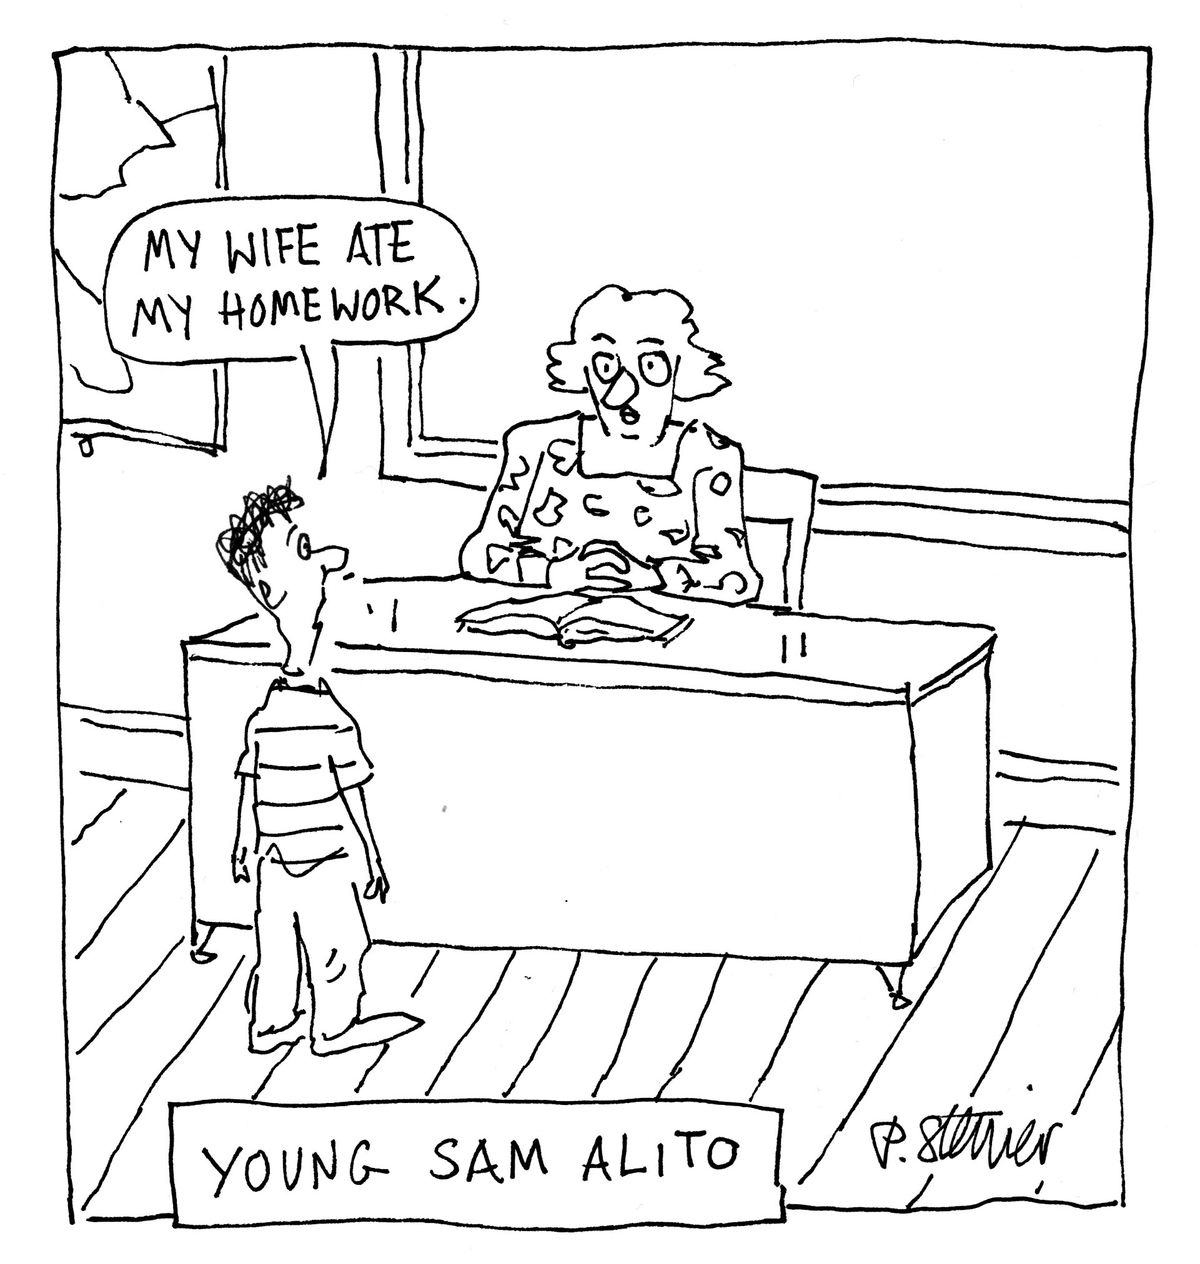 Young Sam Alito